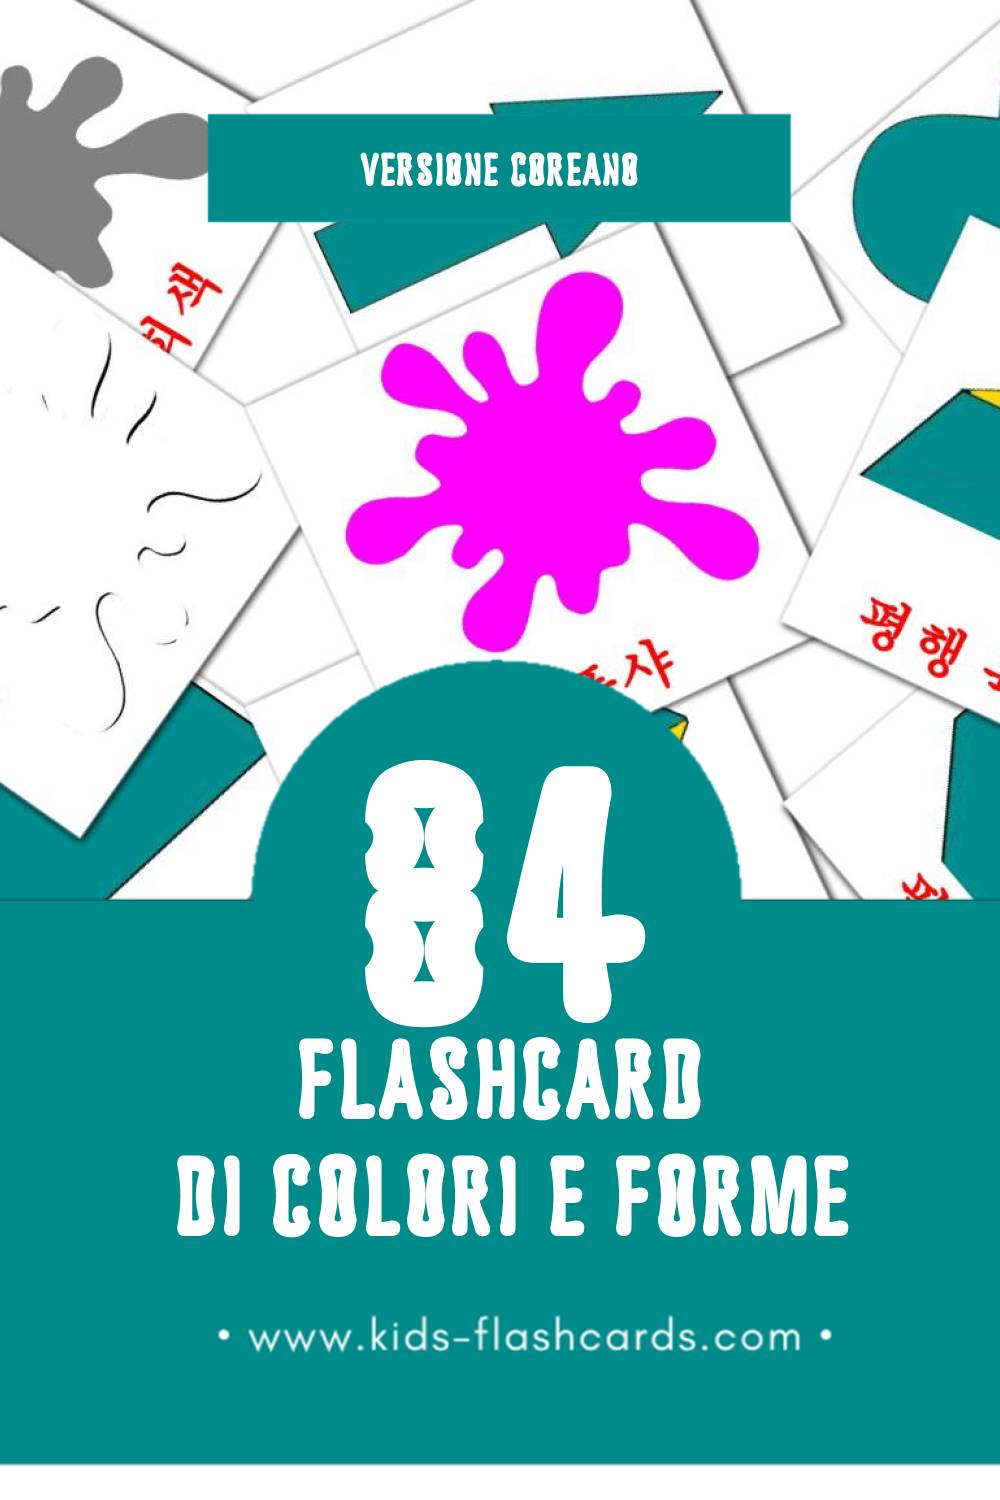 Schede visive sugli 색상 및 모양 per bambini (84 schede in Coreano)